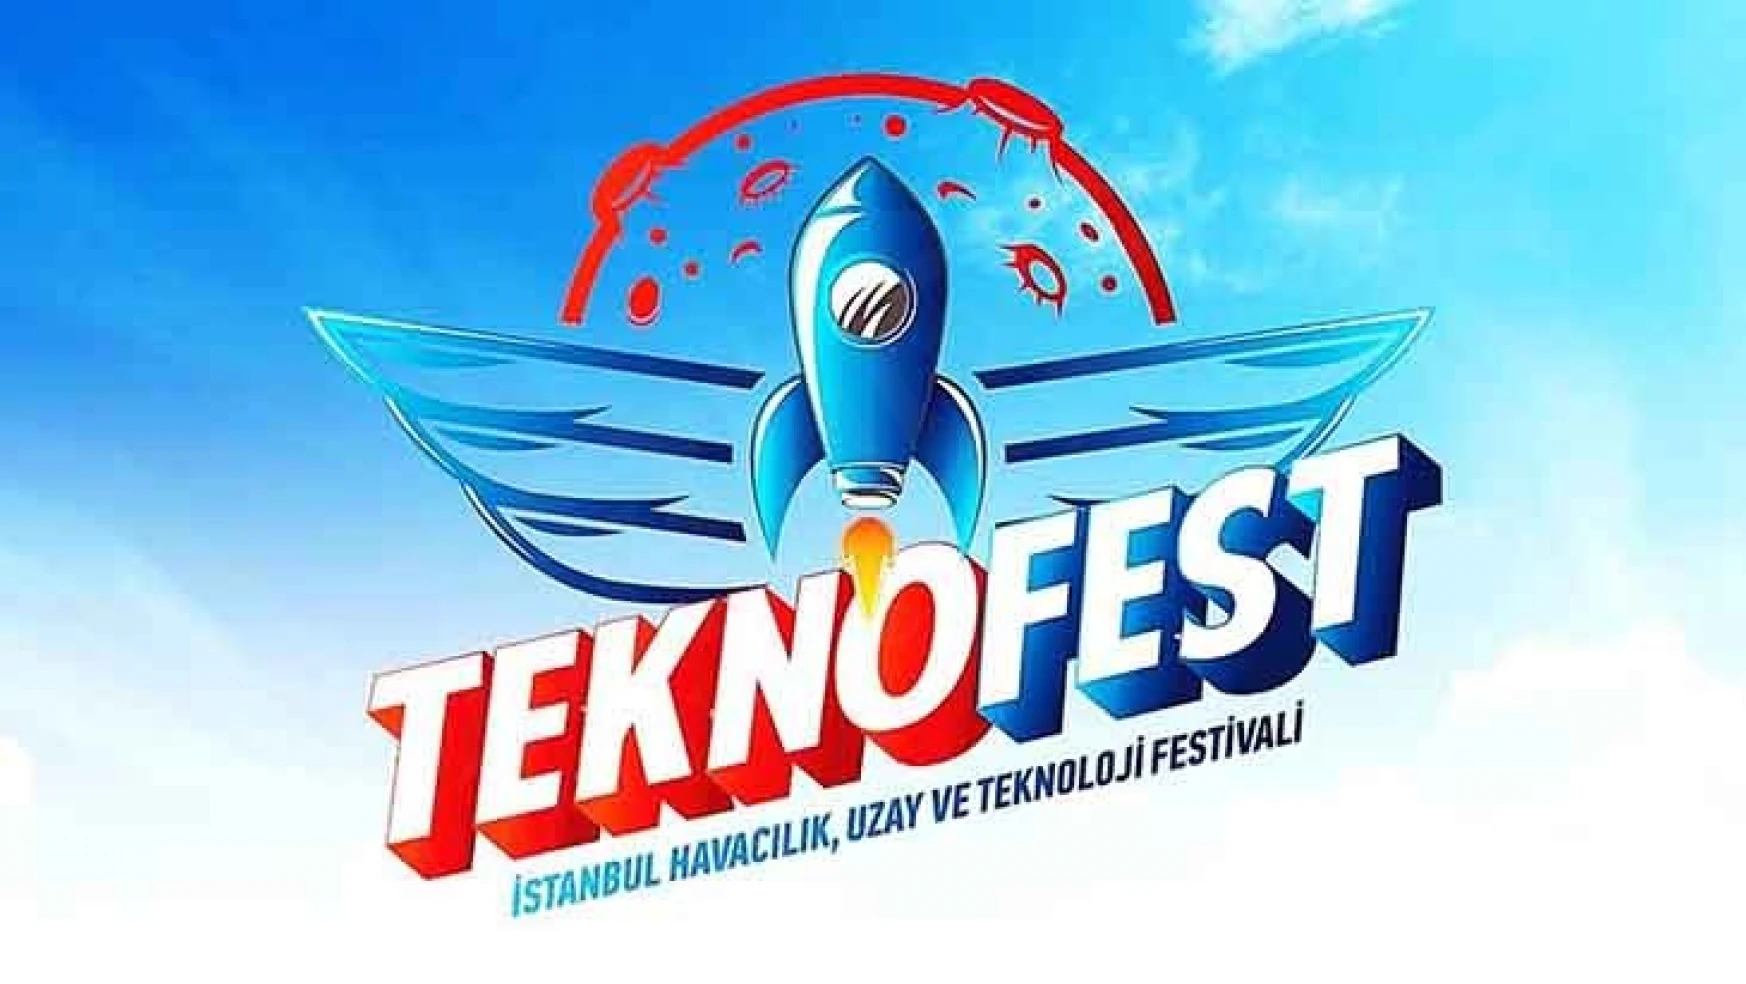 TEKNOFEST Havacılık, Uzay ve Teknoloji Festivali başvuruları başladı